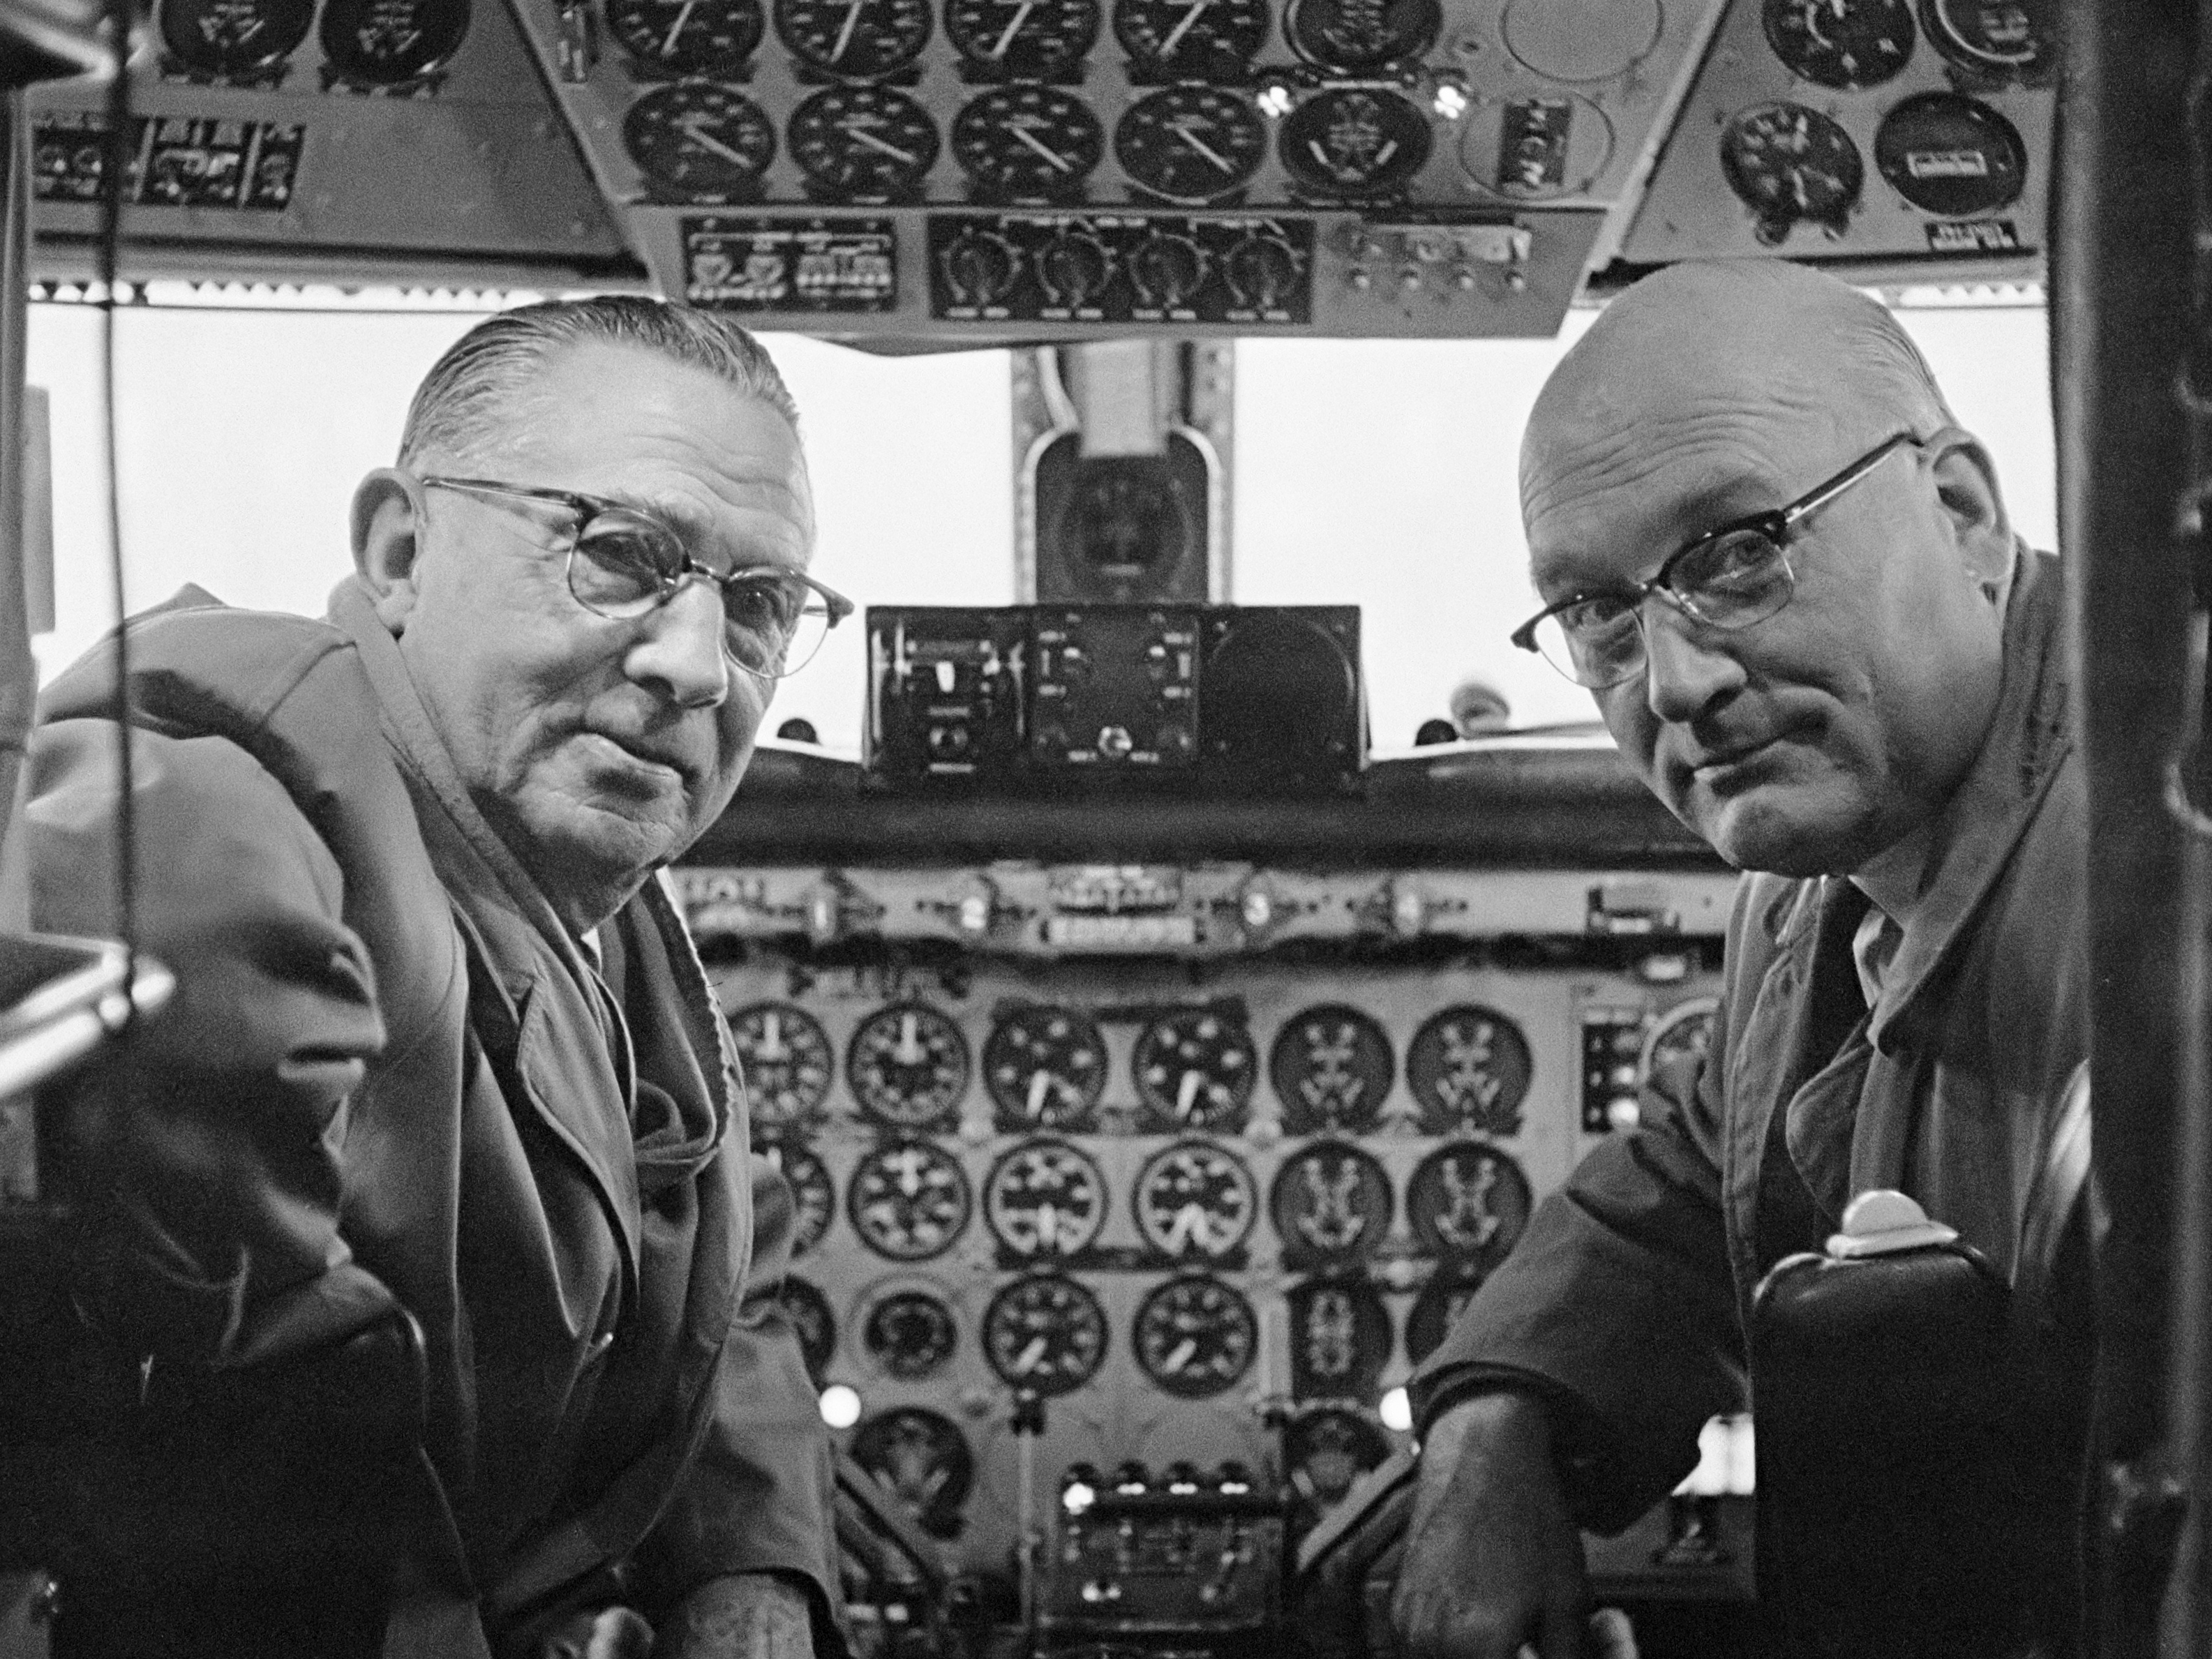 Gezagvoerder Hondong en co-piloot Van Balkom (1959)